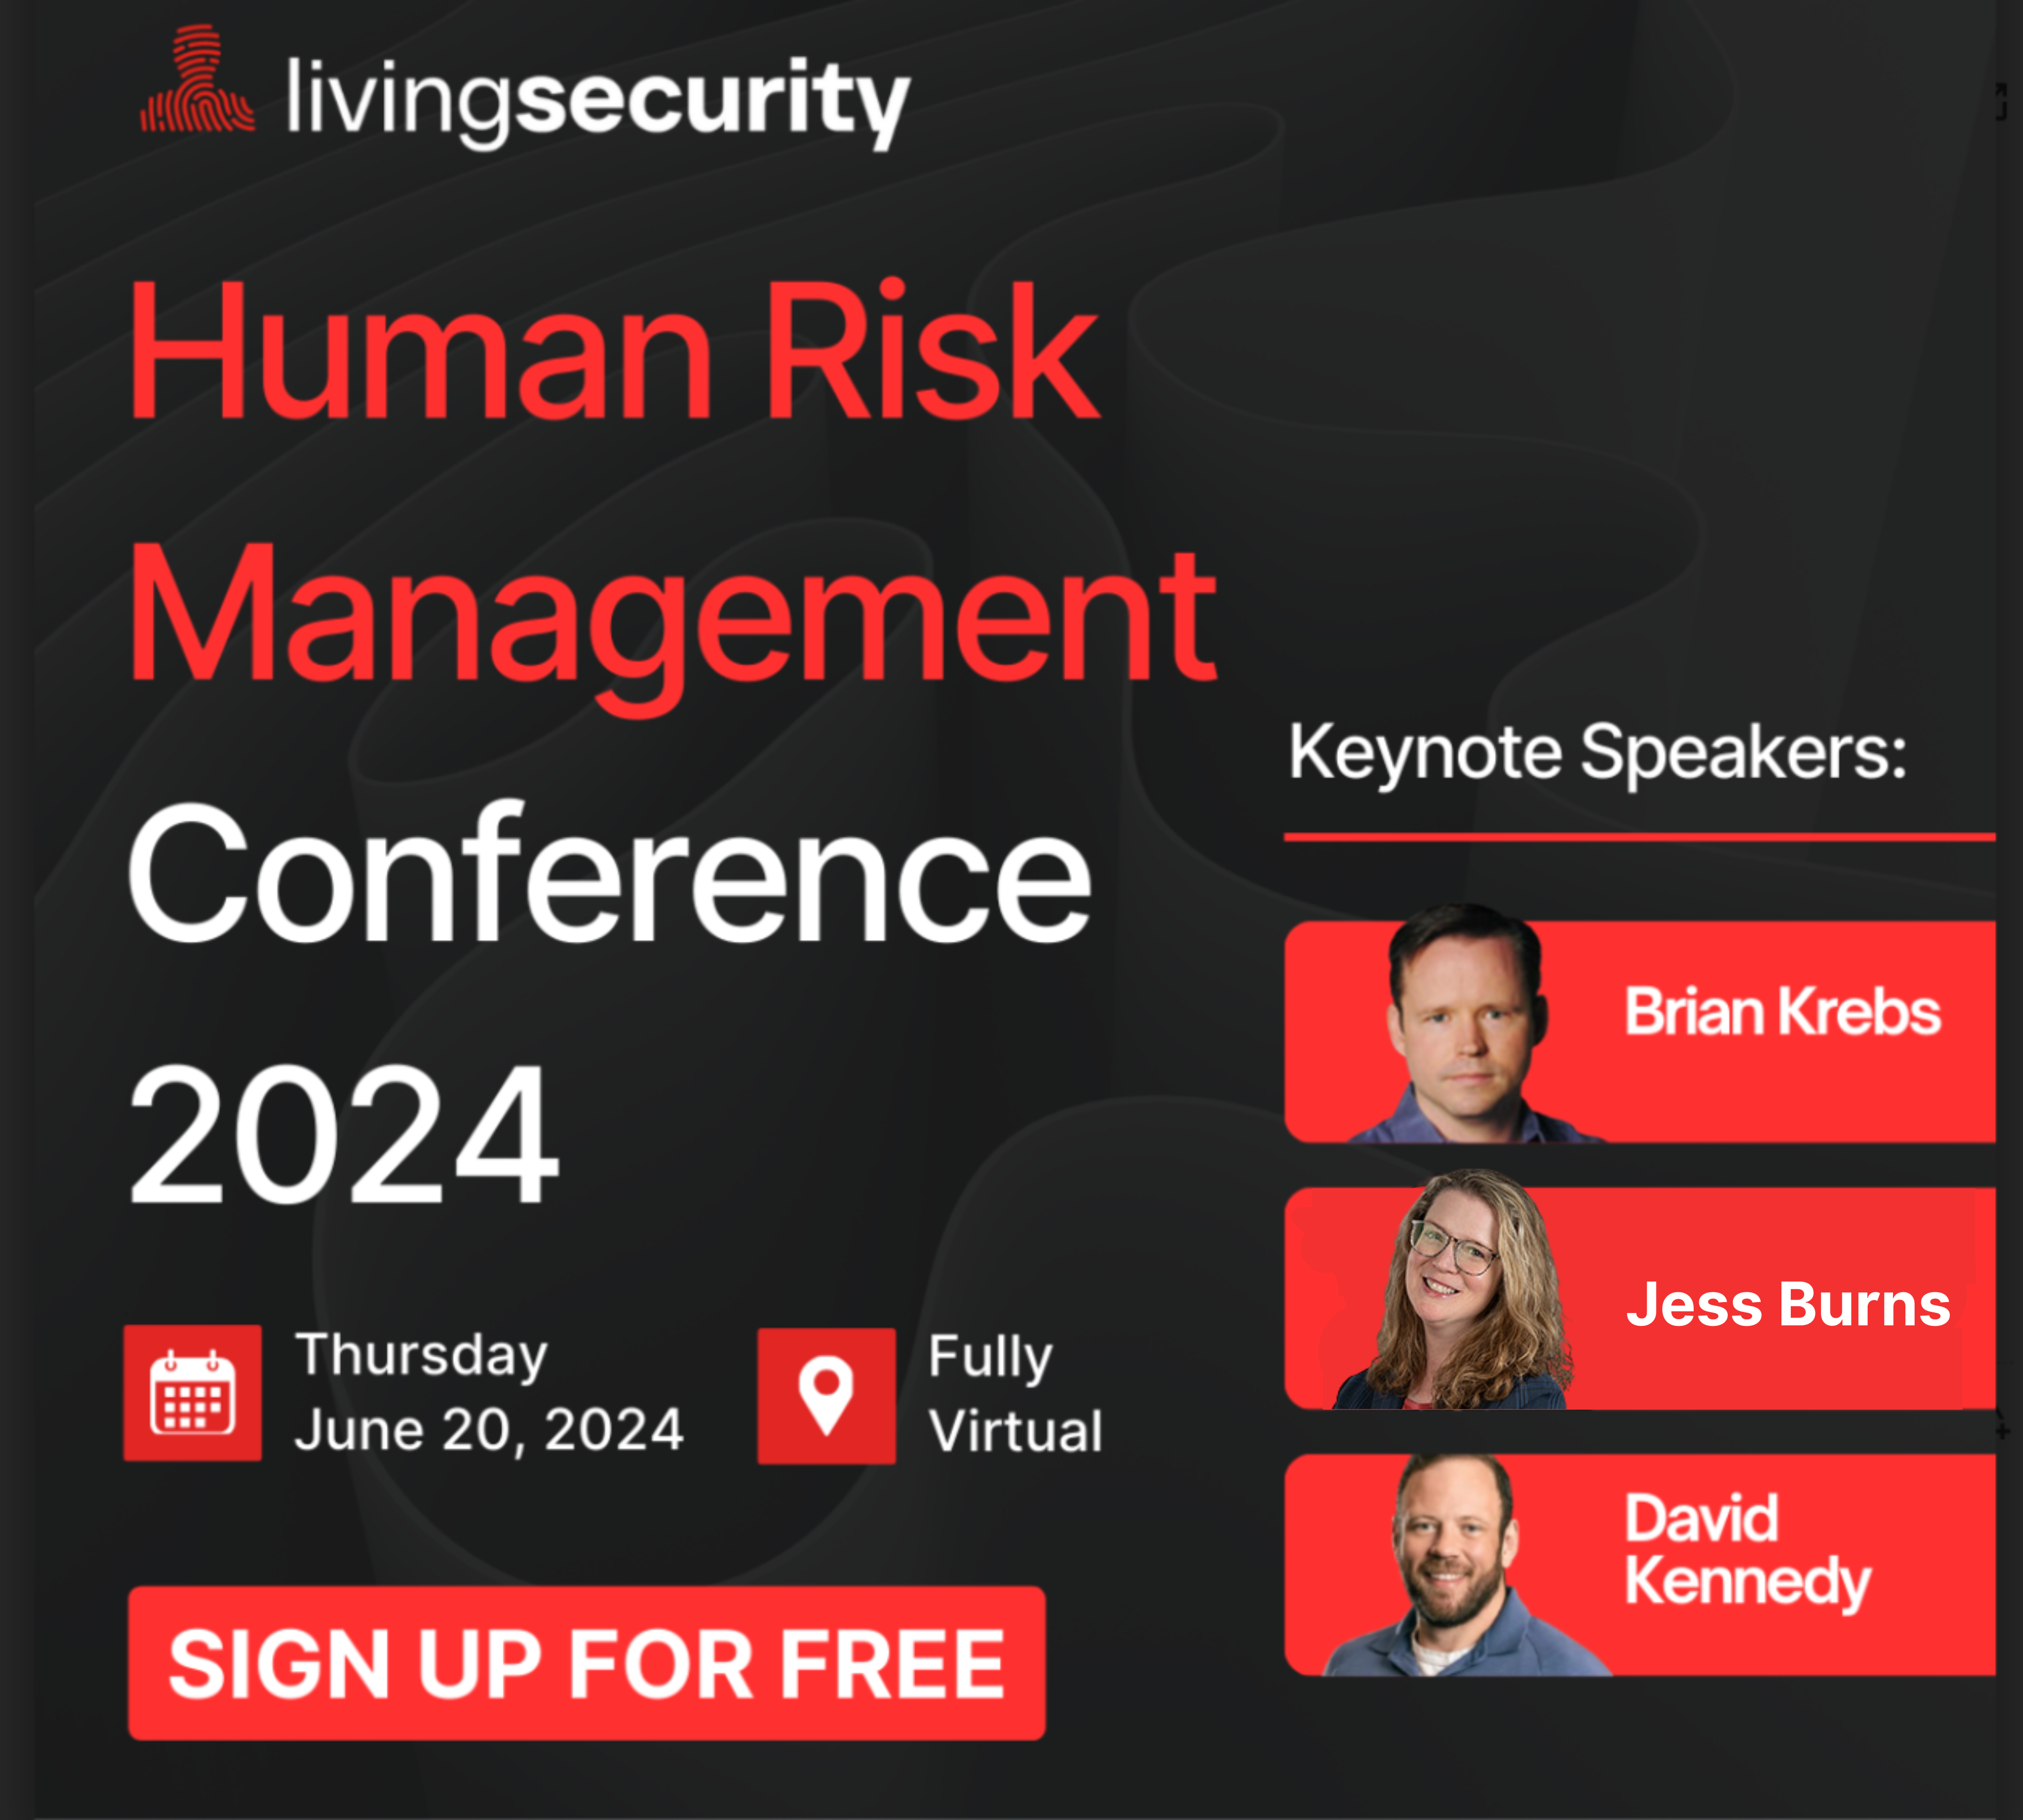 Human Risk Management Conference 2024